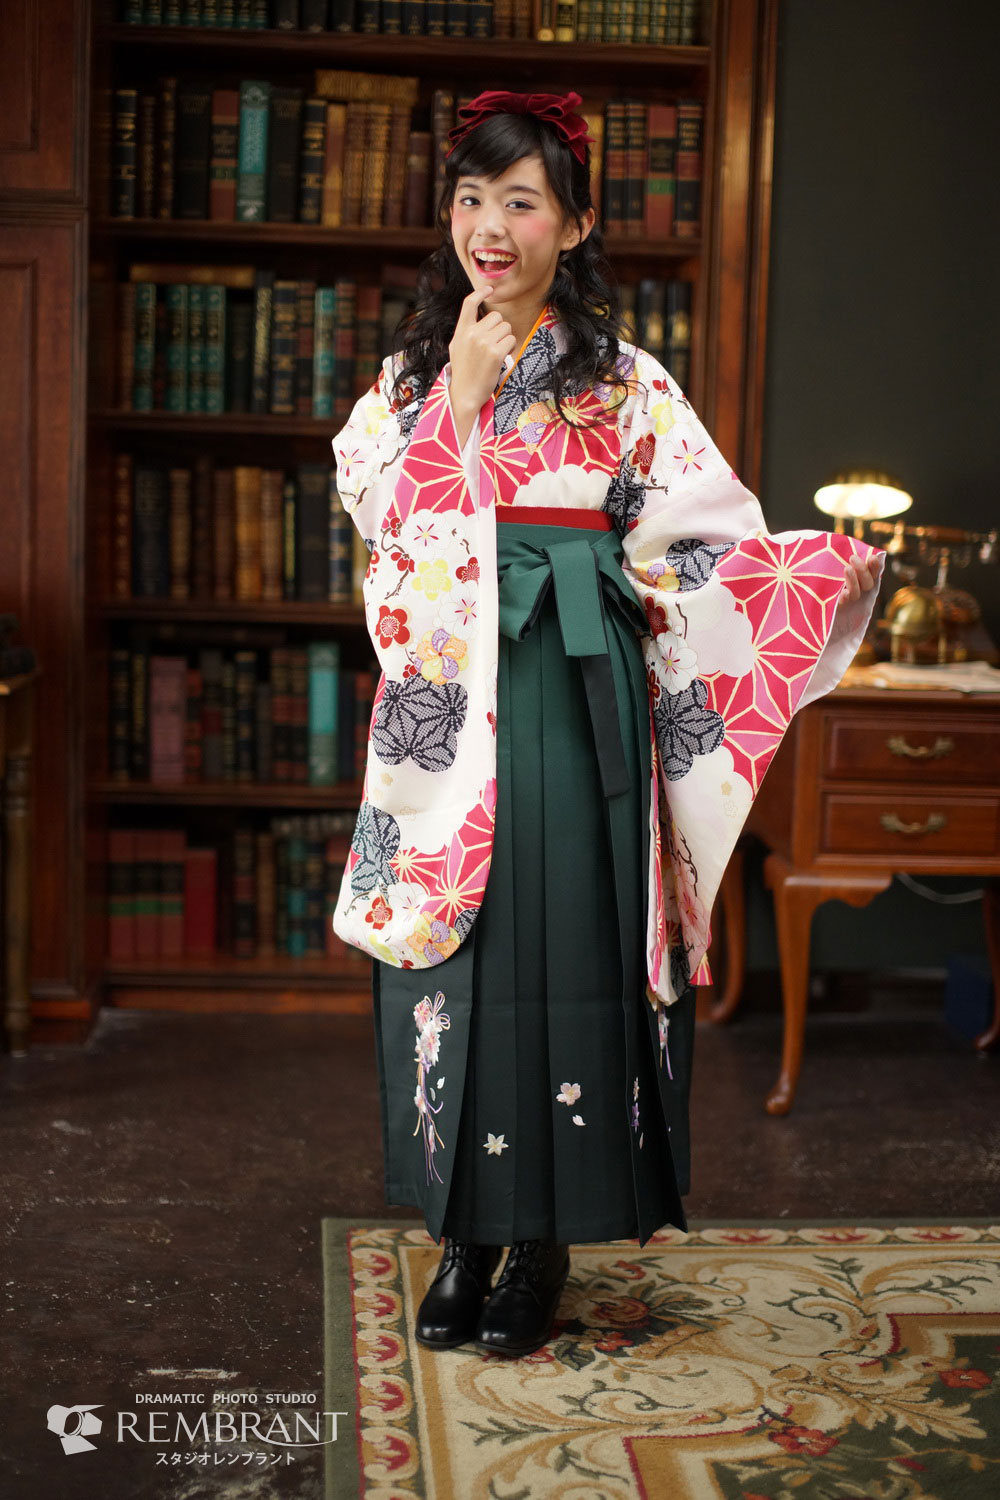 小学校卒業式に「袴で出席」は喜ばしいこと | 京都のおしゃれな写真館 [スタジオレンブラント]